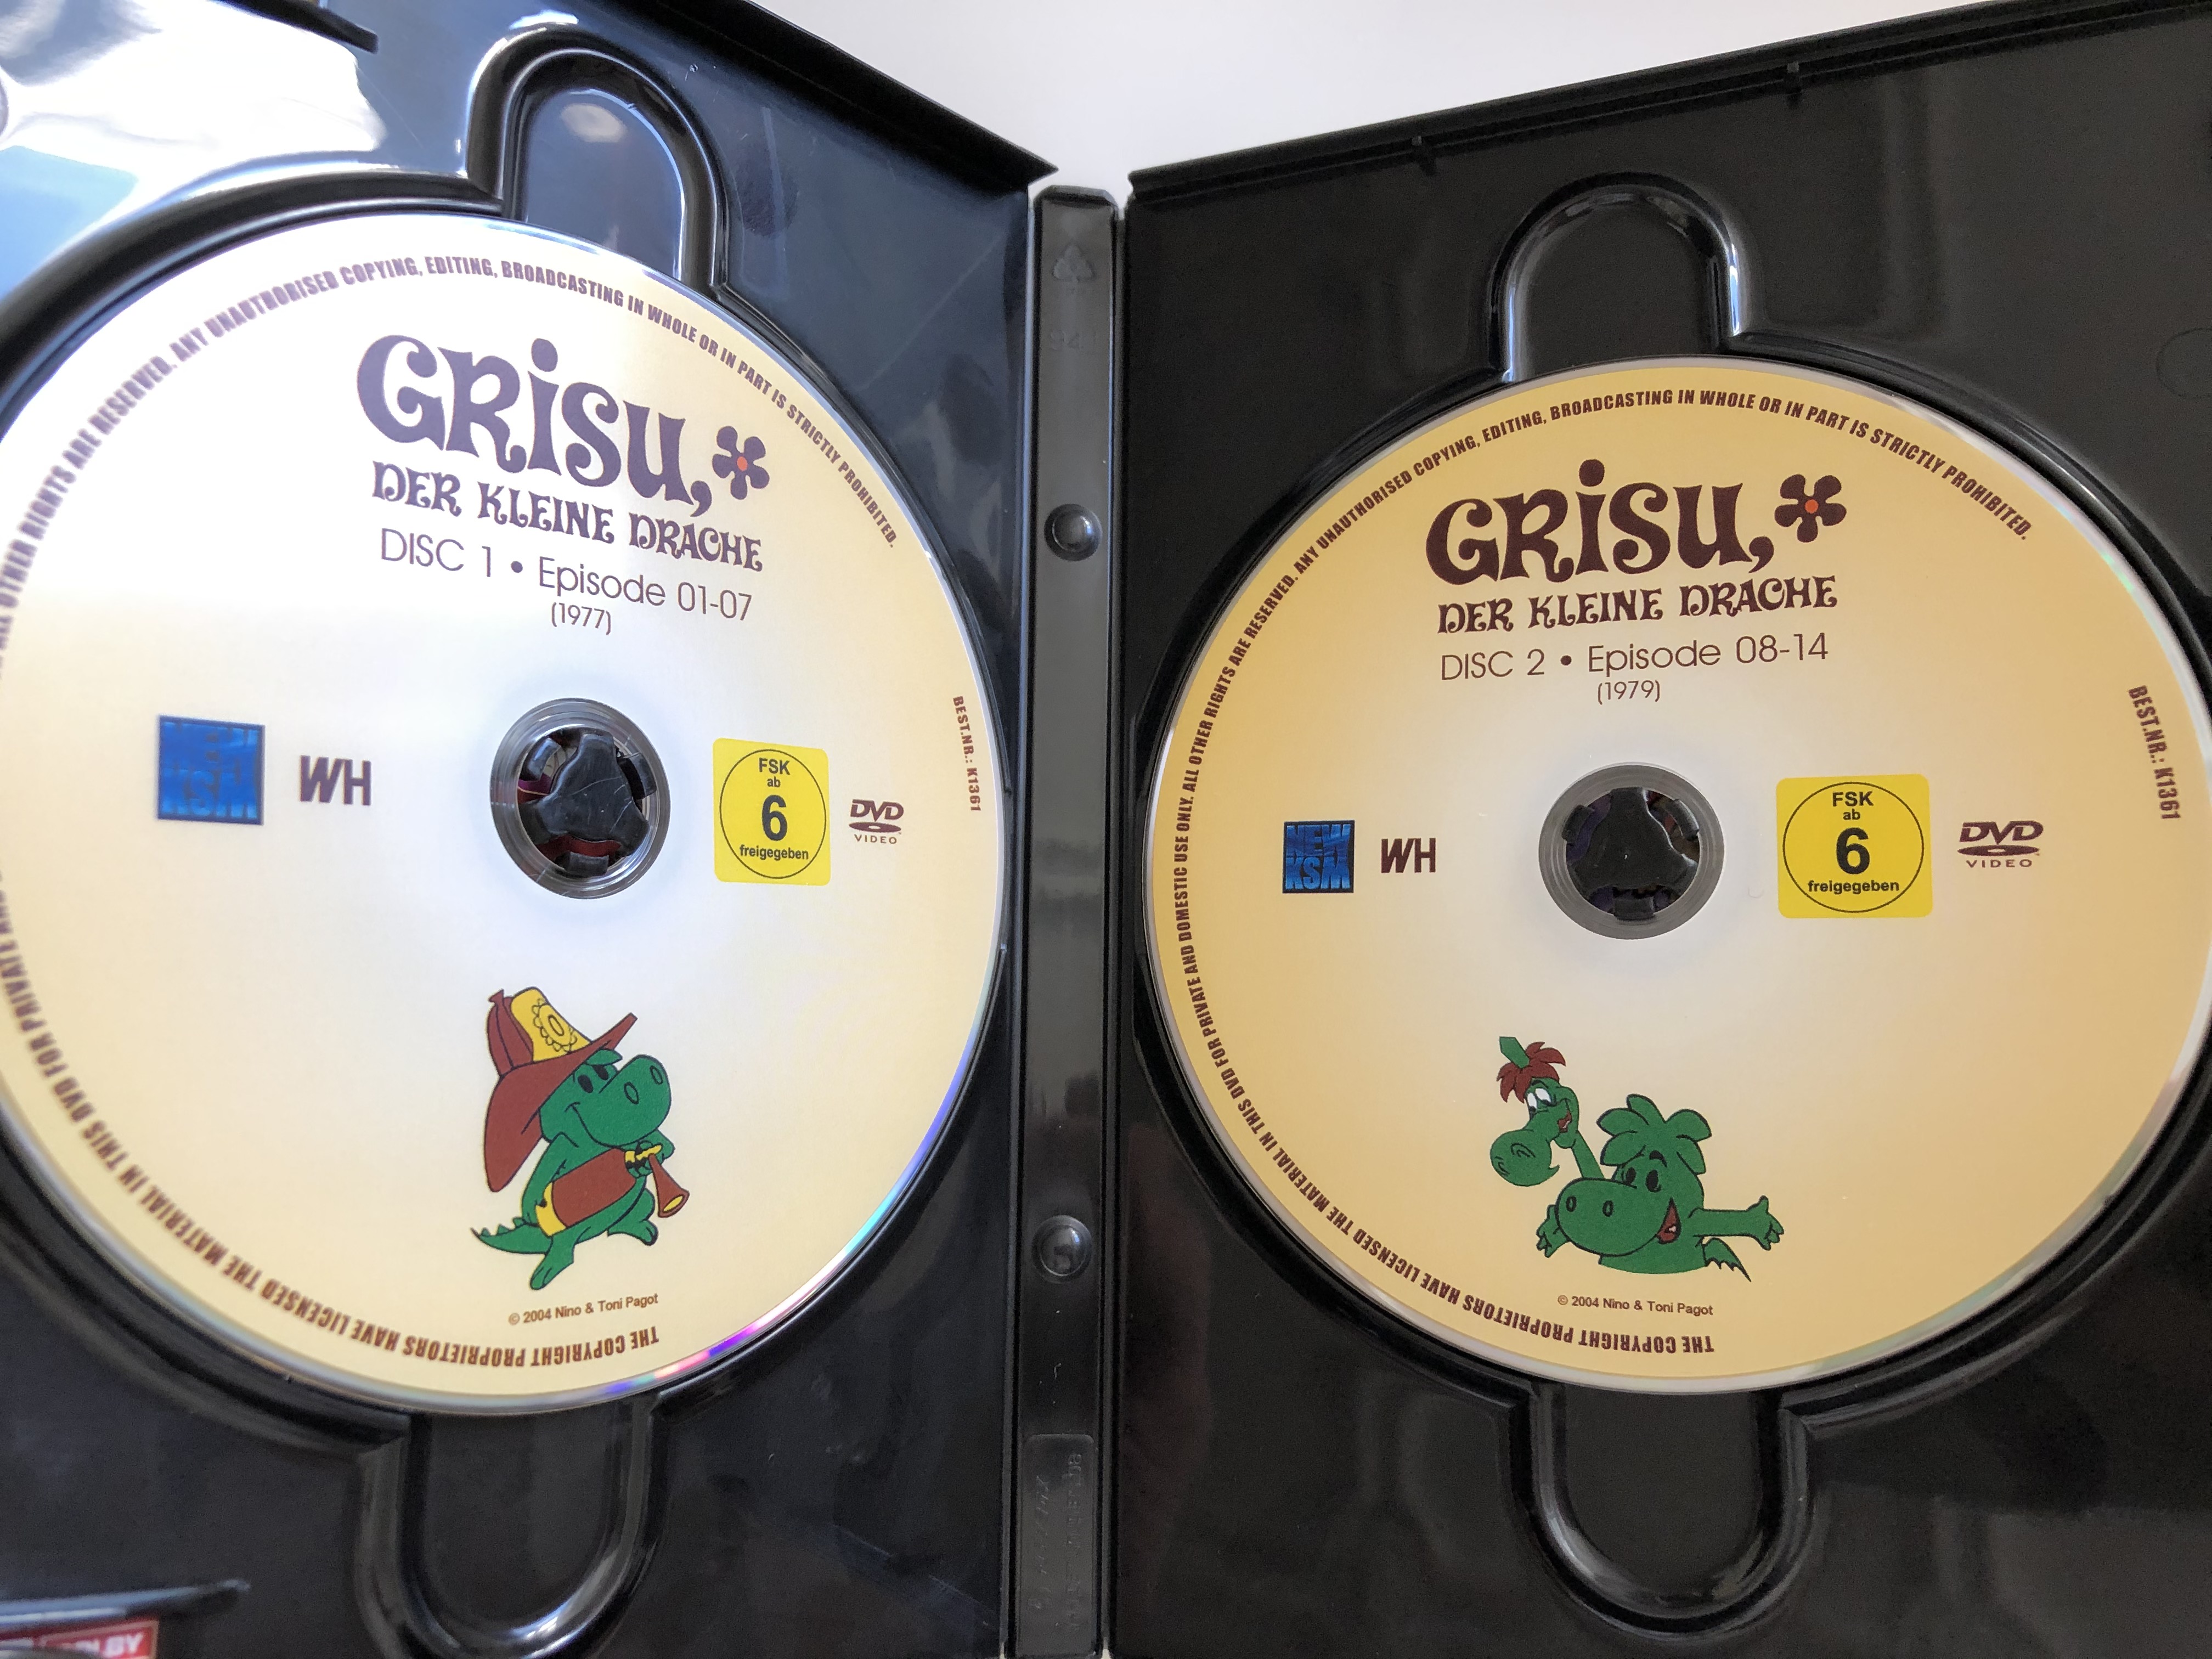 grisu-der-kleine-drache-dvd-2-disc-set-box-1-episode-01-14-draghetto-gris-2-.jpg